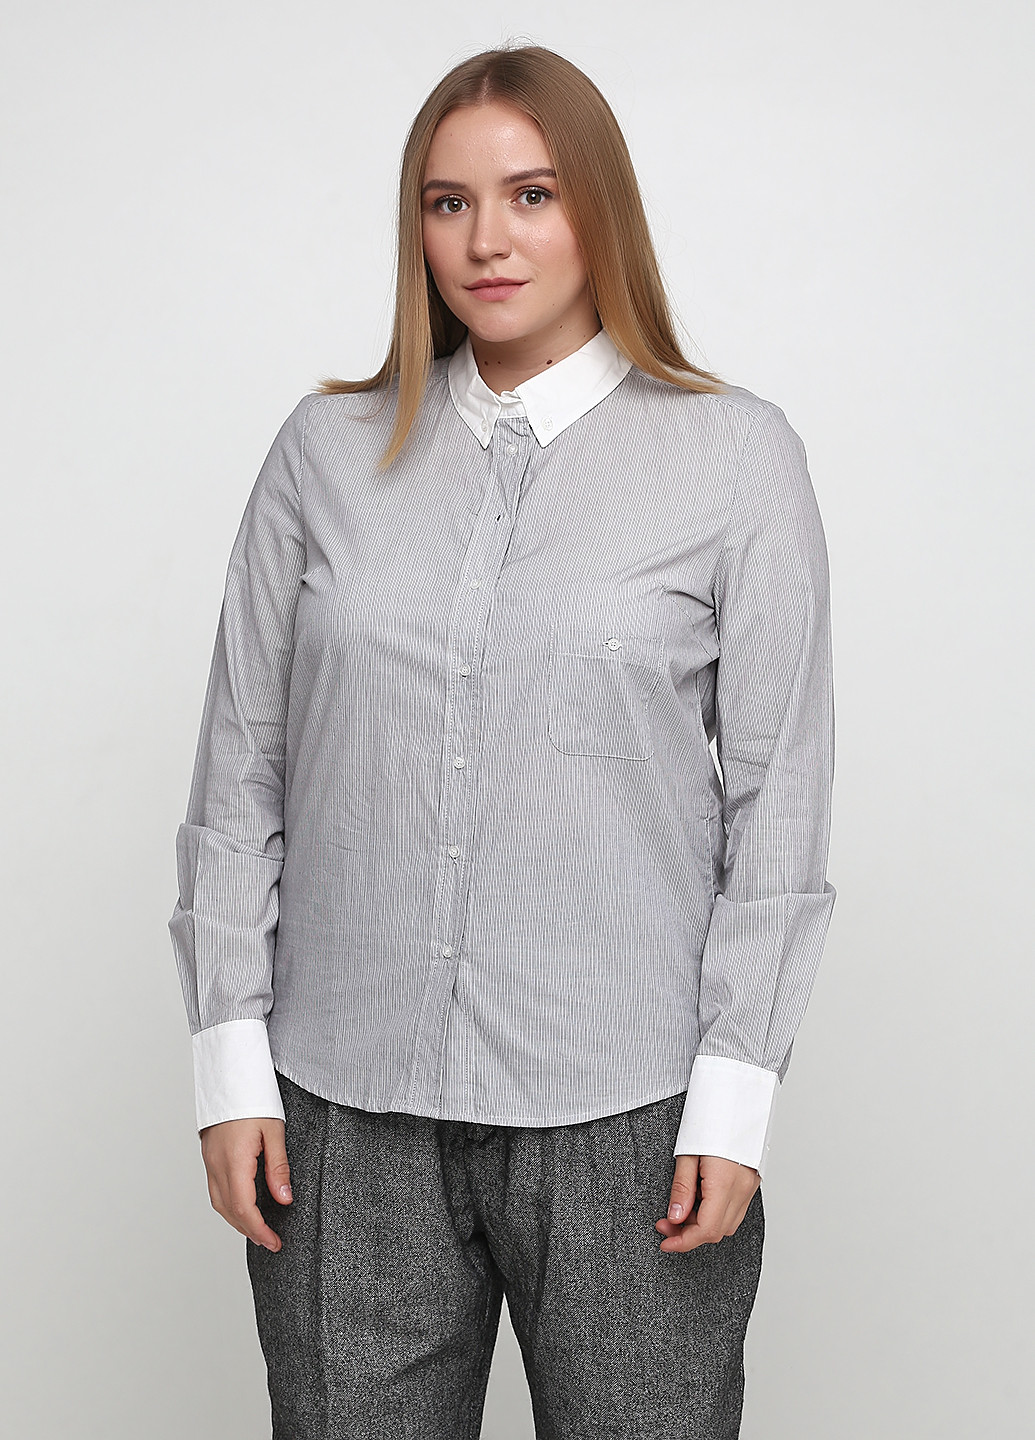 Комбинированная демисезонная блуза Kookai